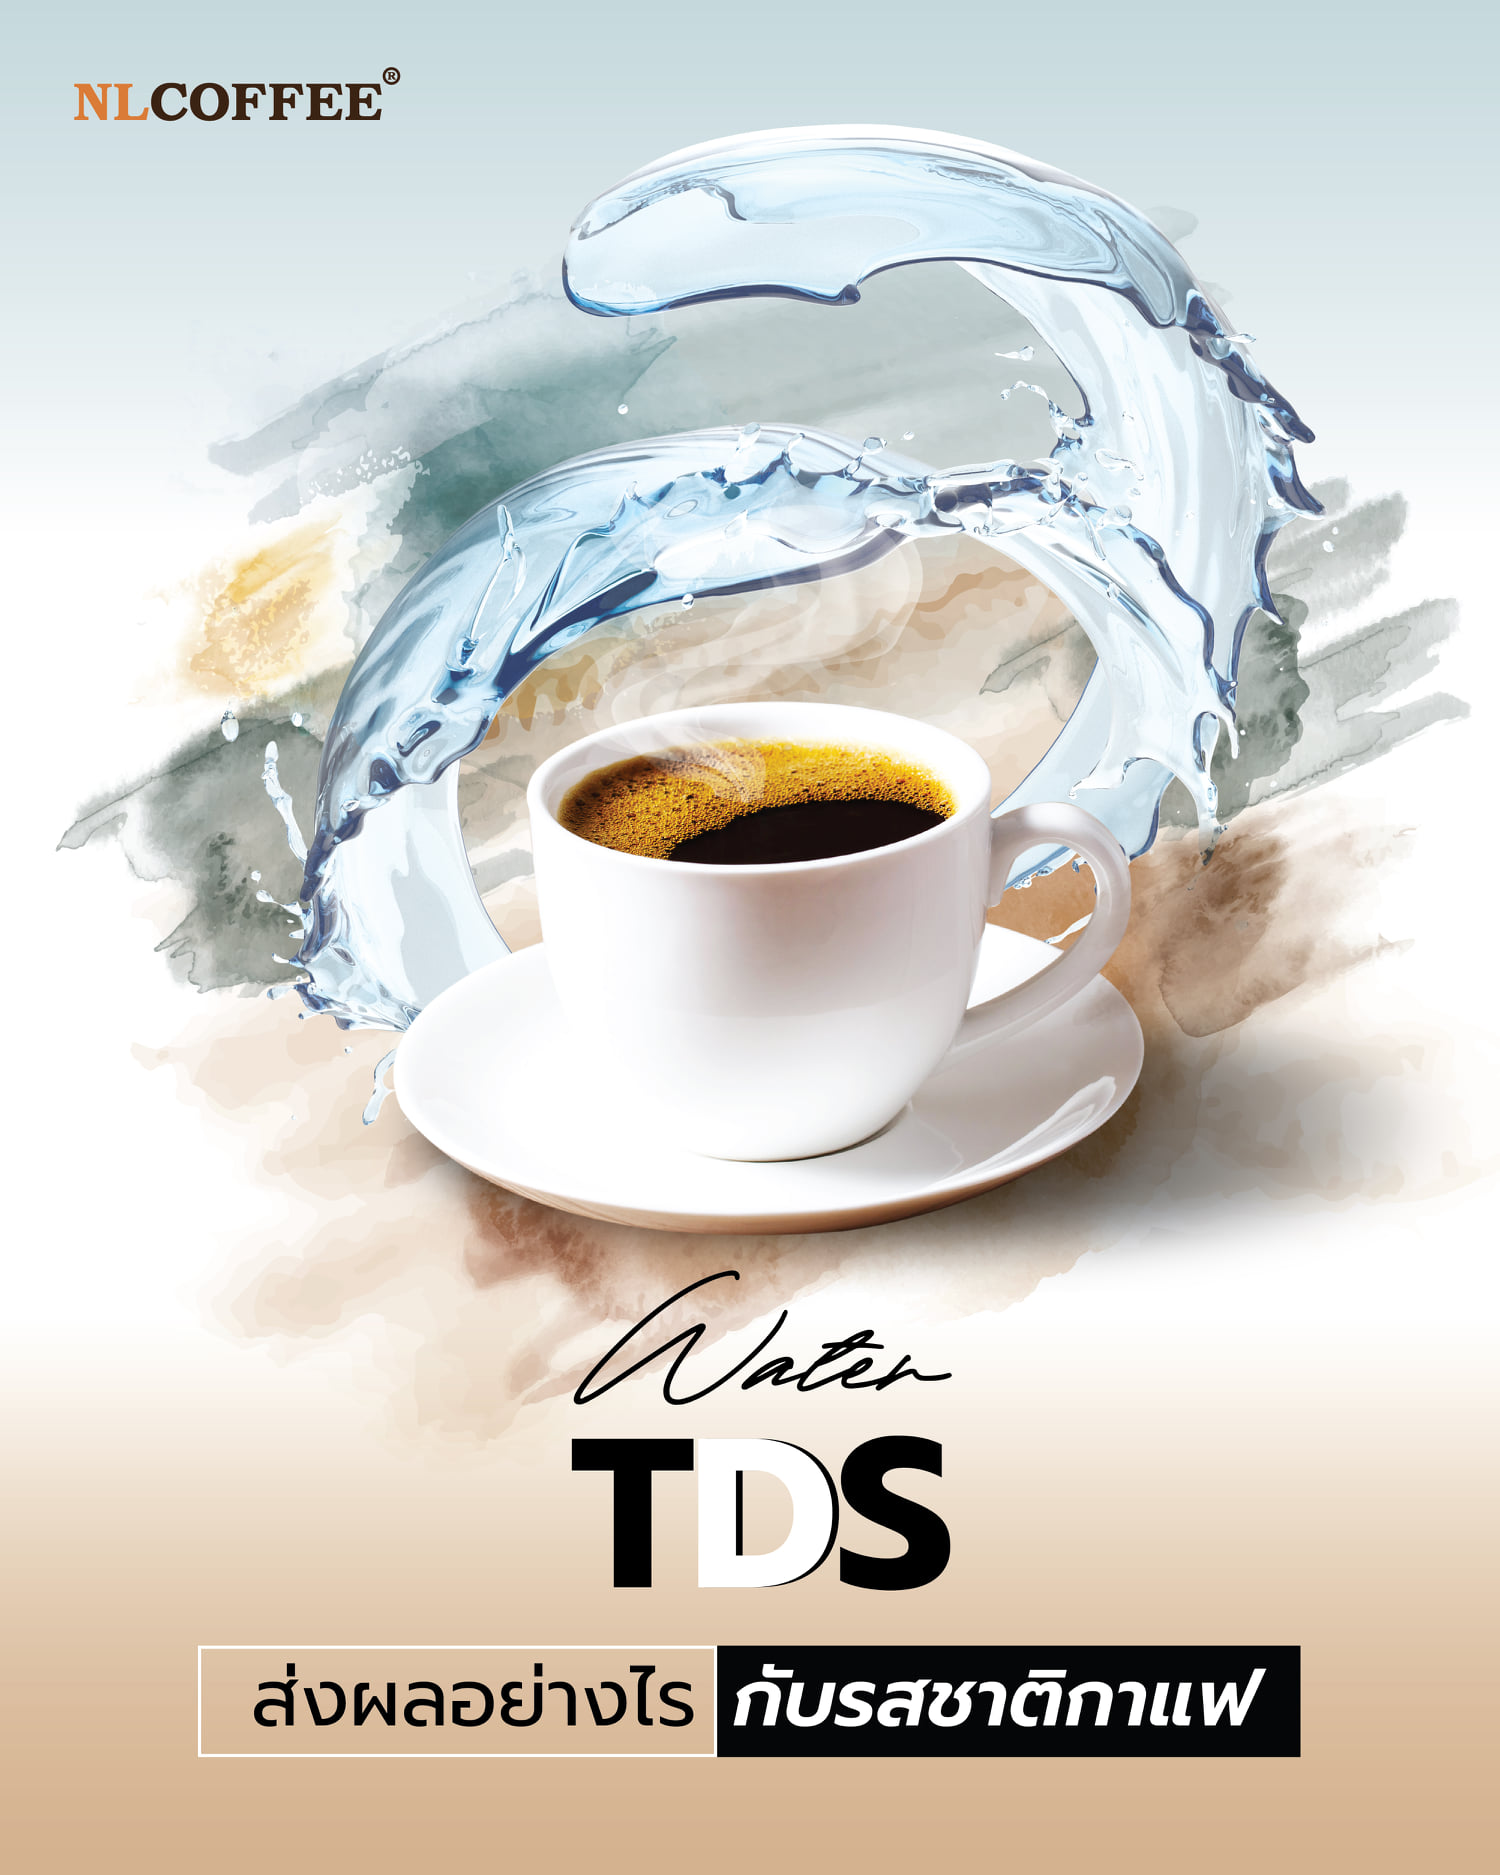 ค่า Water TDS ส่งผลอย่างไรกับรสชาติของกาแฟ?